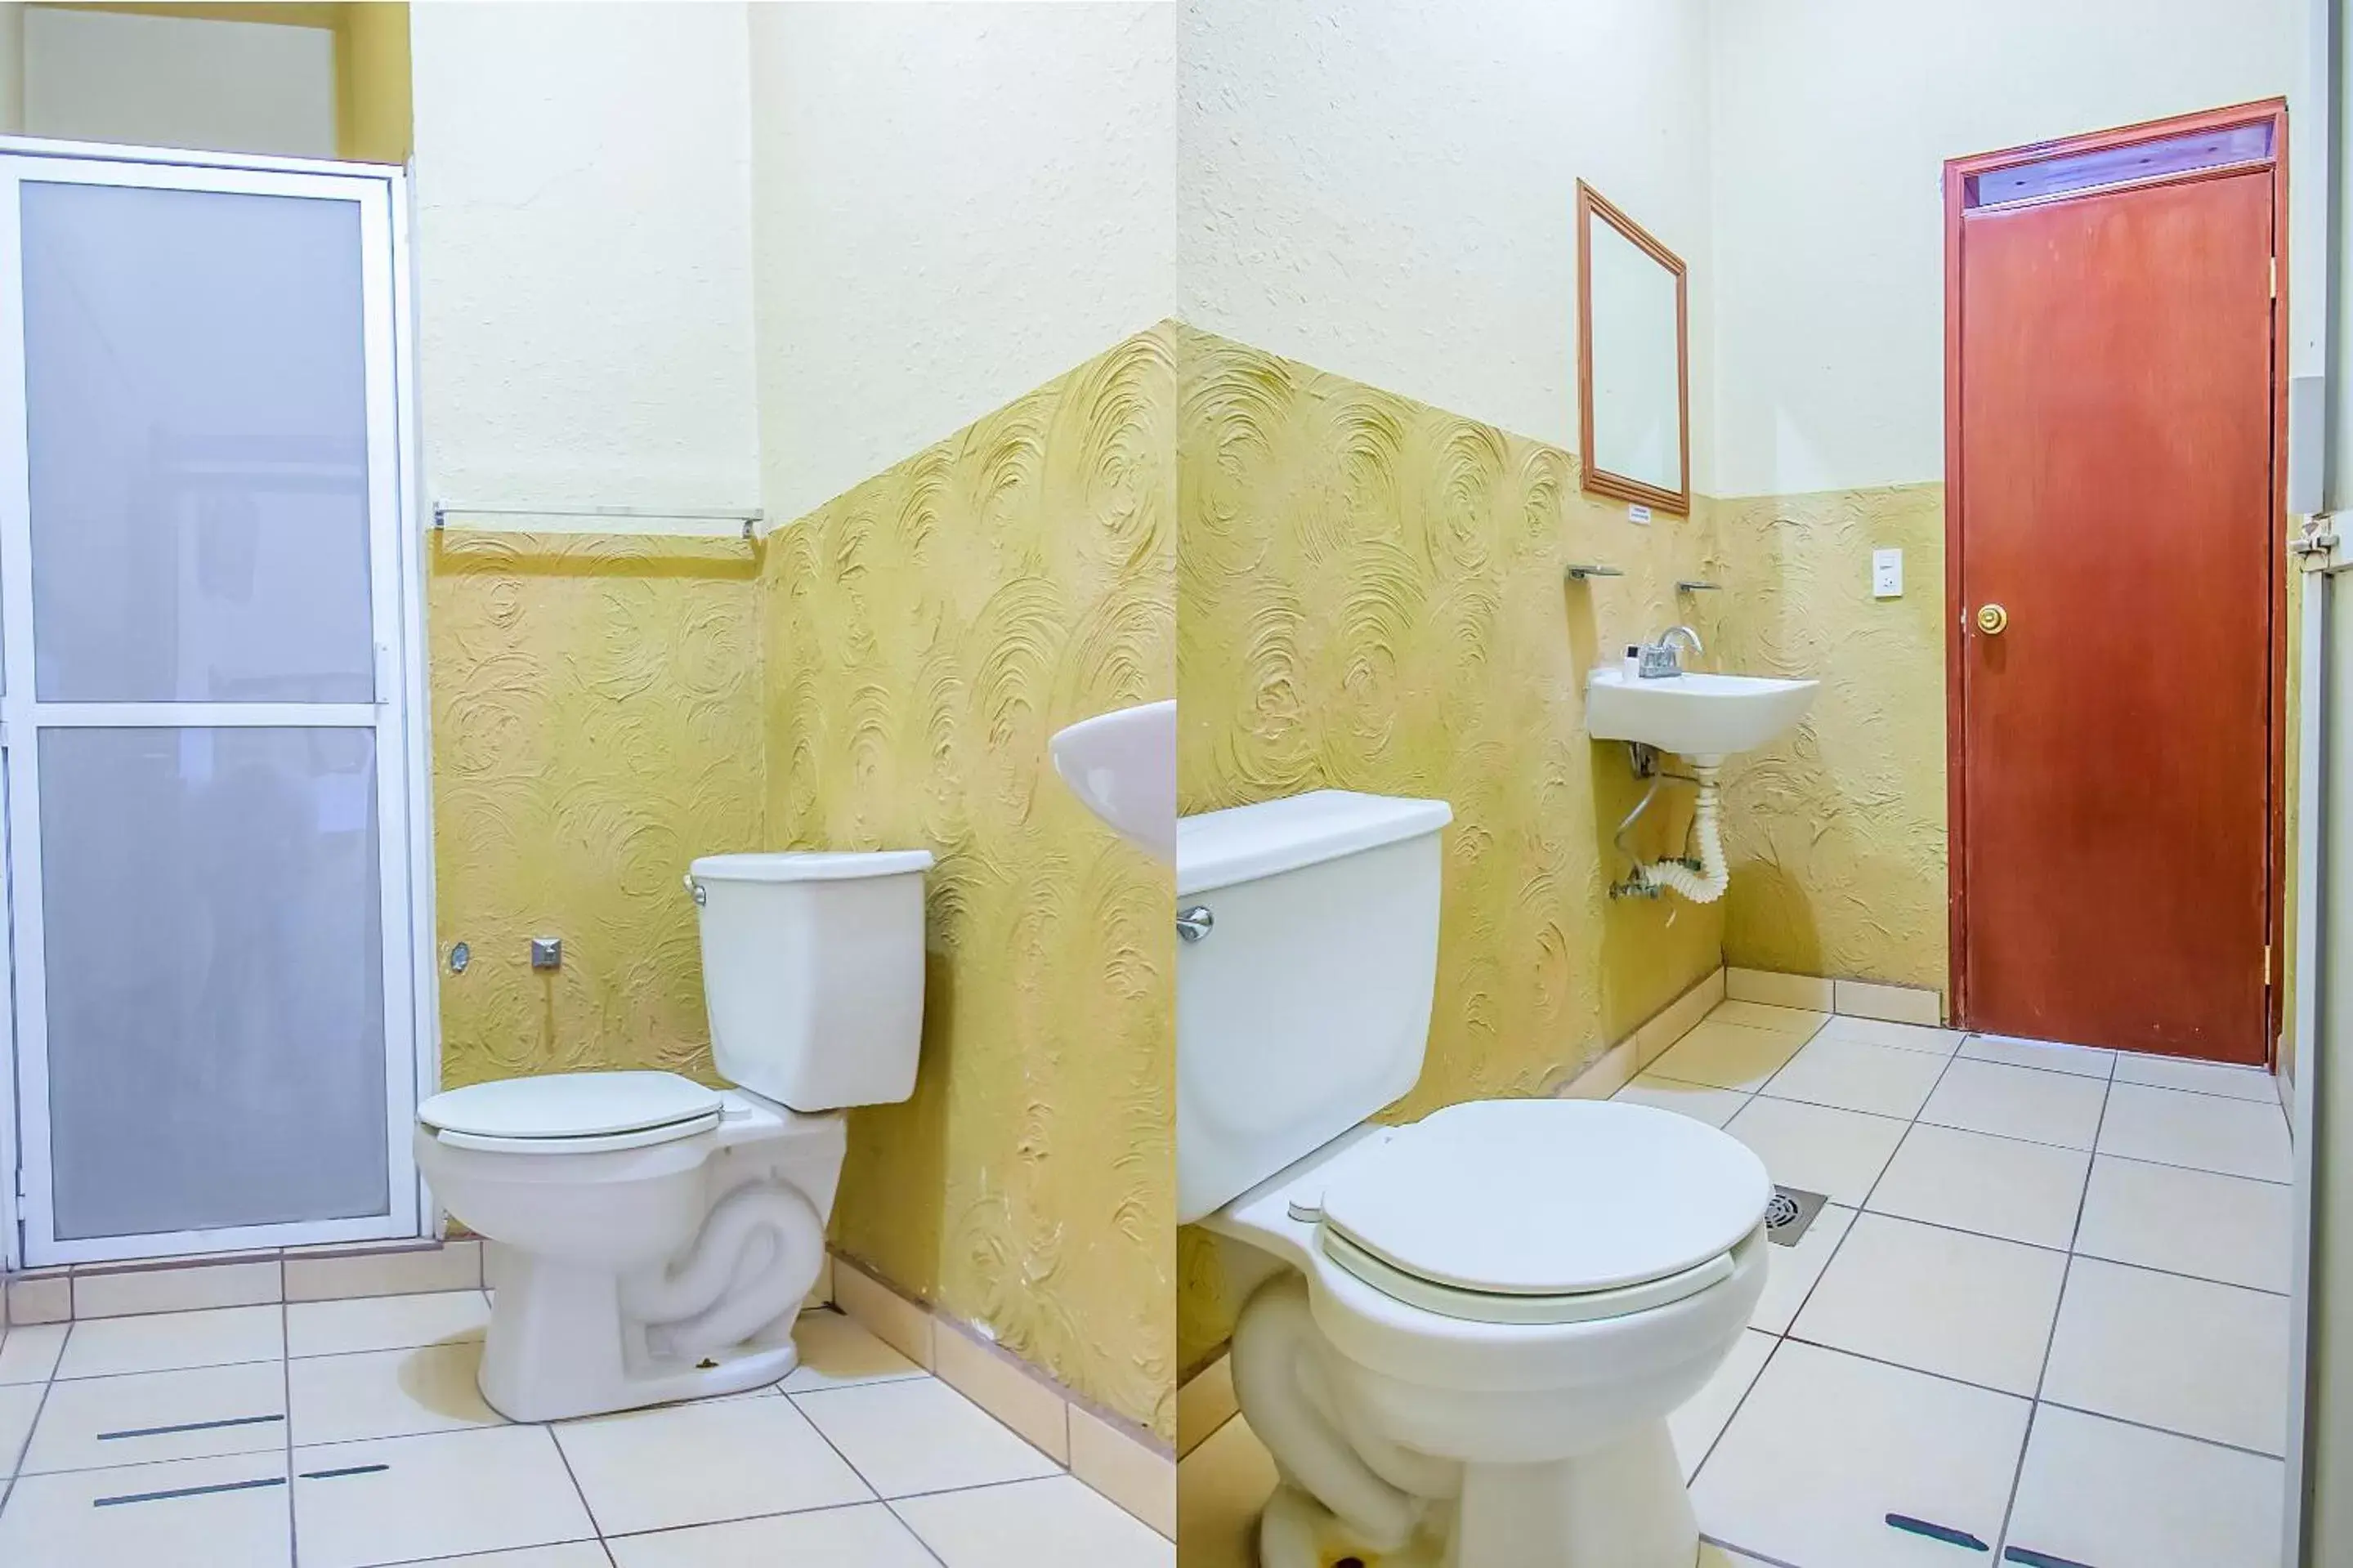 Bathroom in OYO Hotel Morelos, Villa Hidalgo